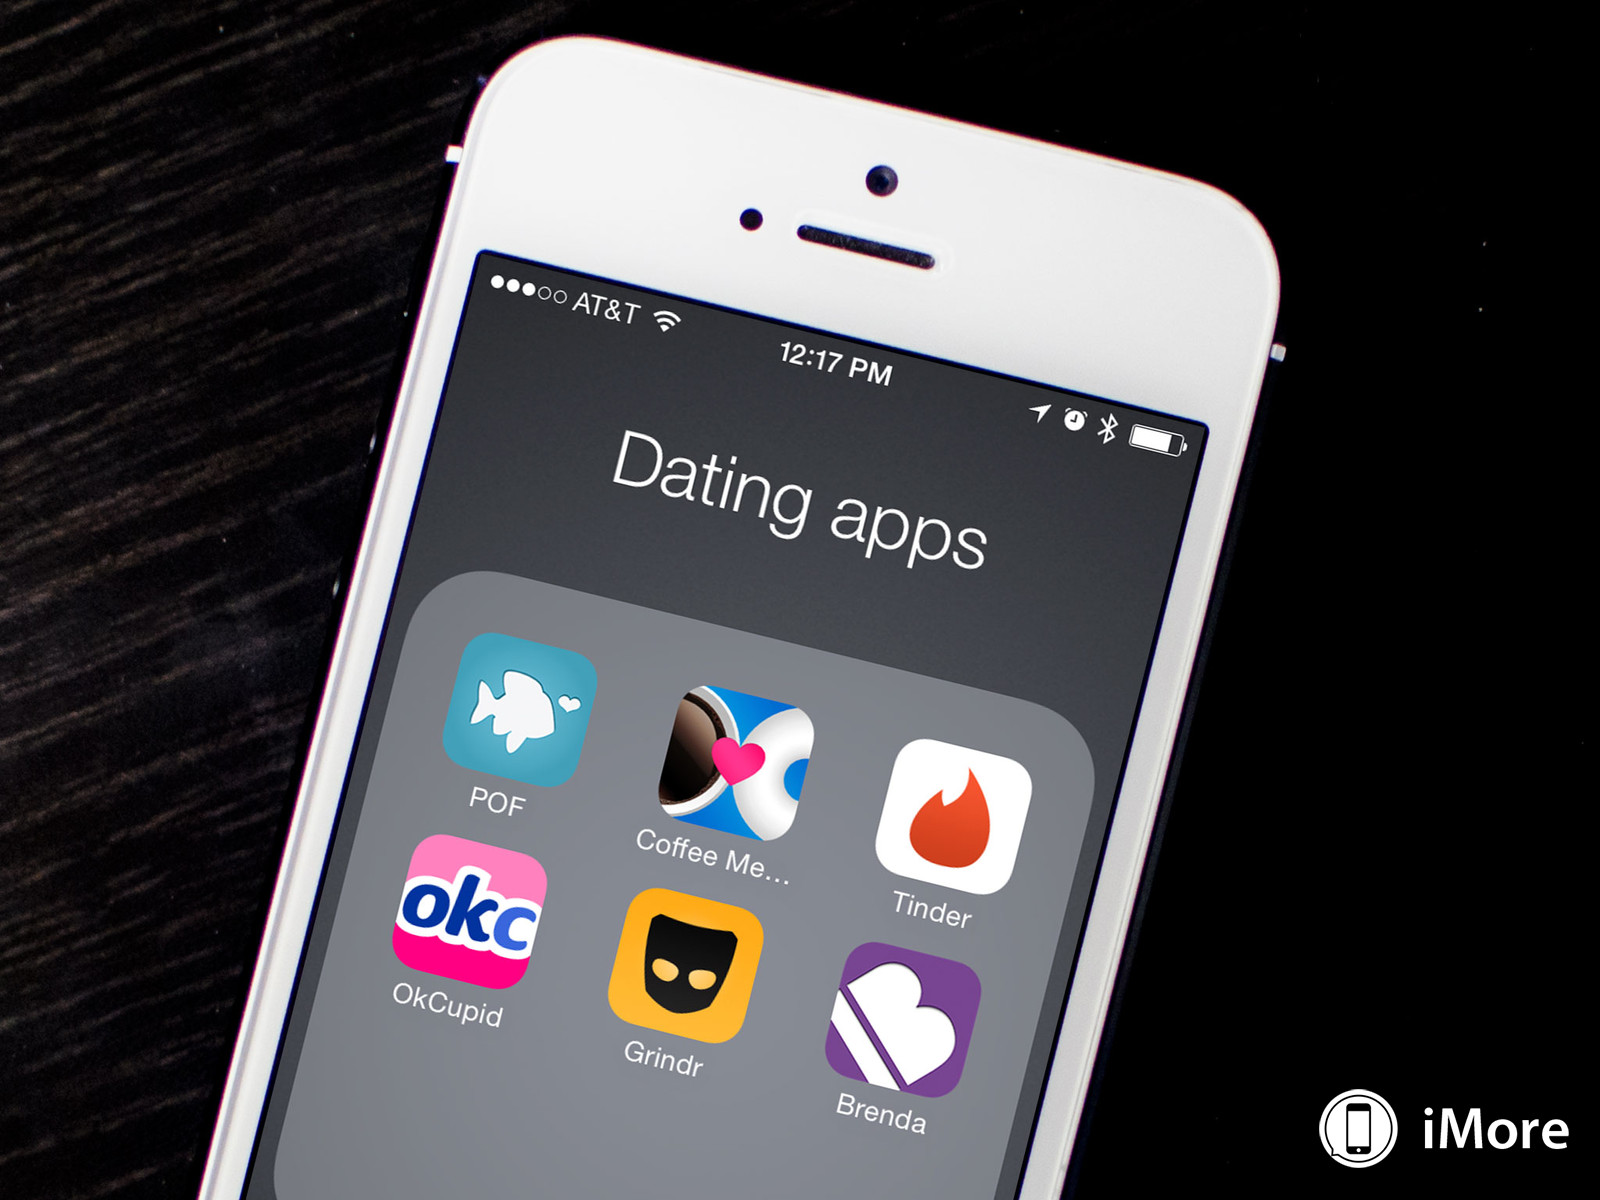 Die besten kostenlosen dating-apps für toronto